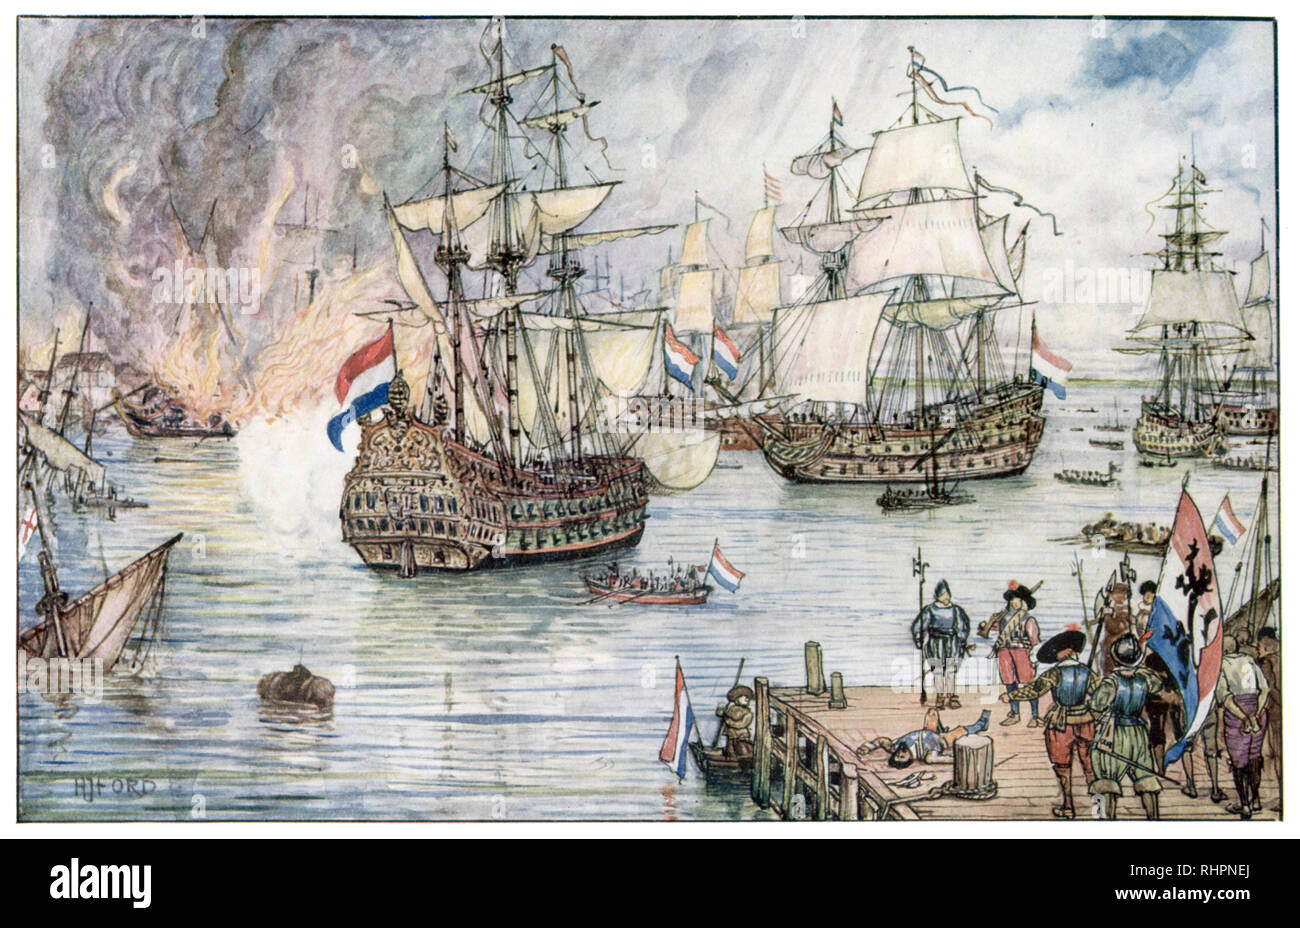 Der Holländer in Medway. Von Henry Justice Ford (1860-1941). Die Razzia auf dem Medway (Schlacht von Medway) während des zweiten angloniederländischen Krieges im Juni 1667 war ein erfolgreicher Angriff der niederländischen Marine, der britischen Royal Navy. Stockfoto